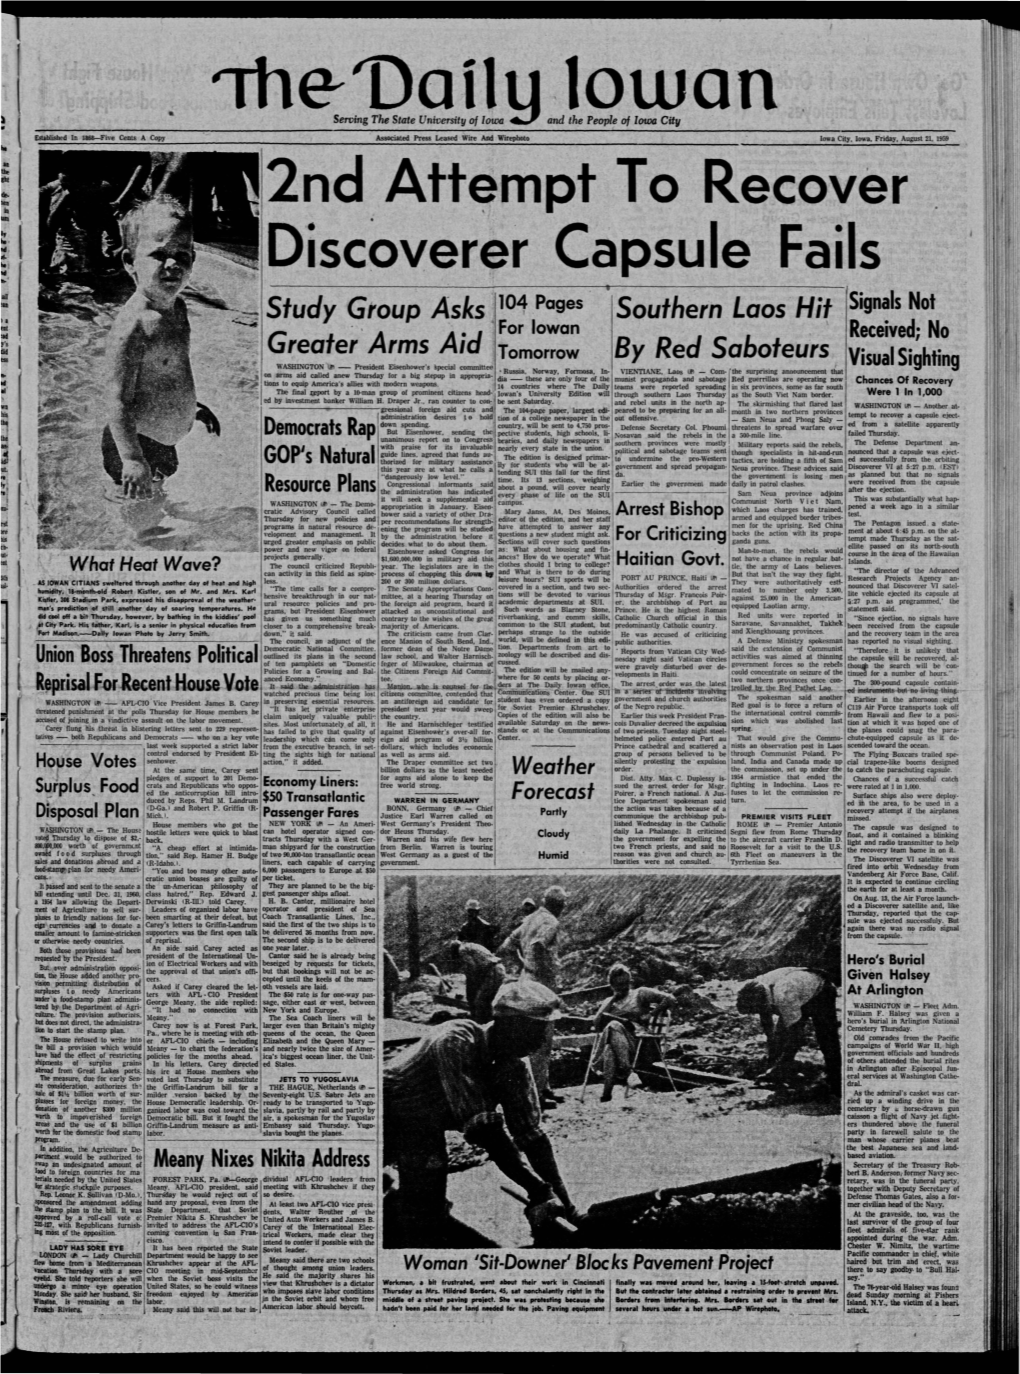 Daily Iowan (Iowa City, Iowa), 1959-08-21